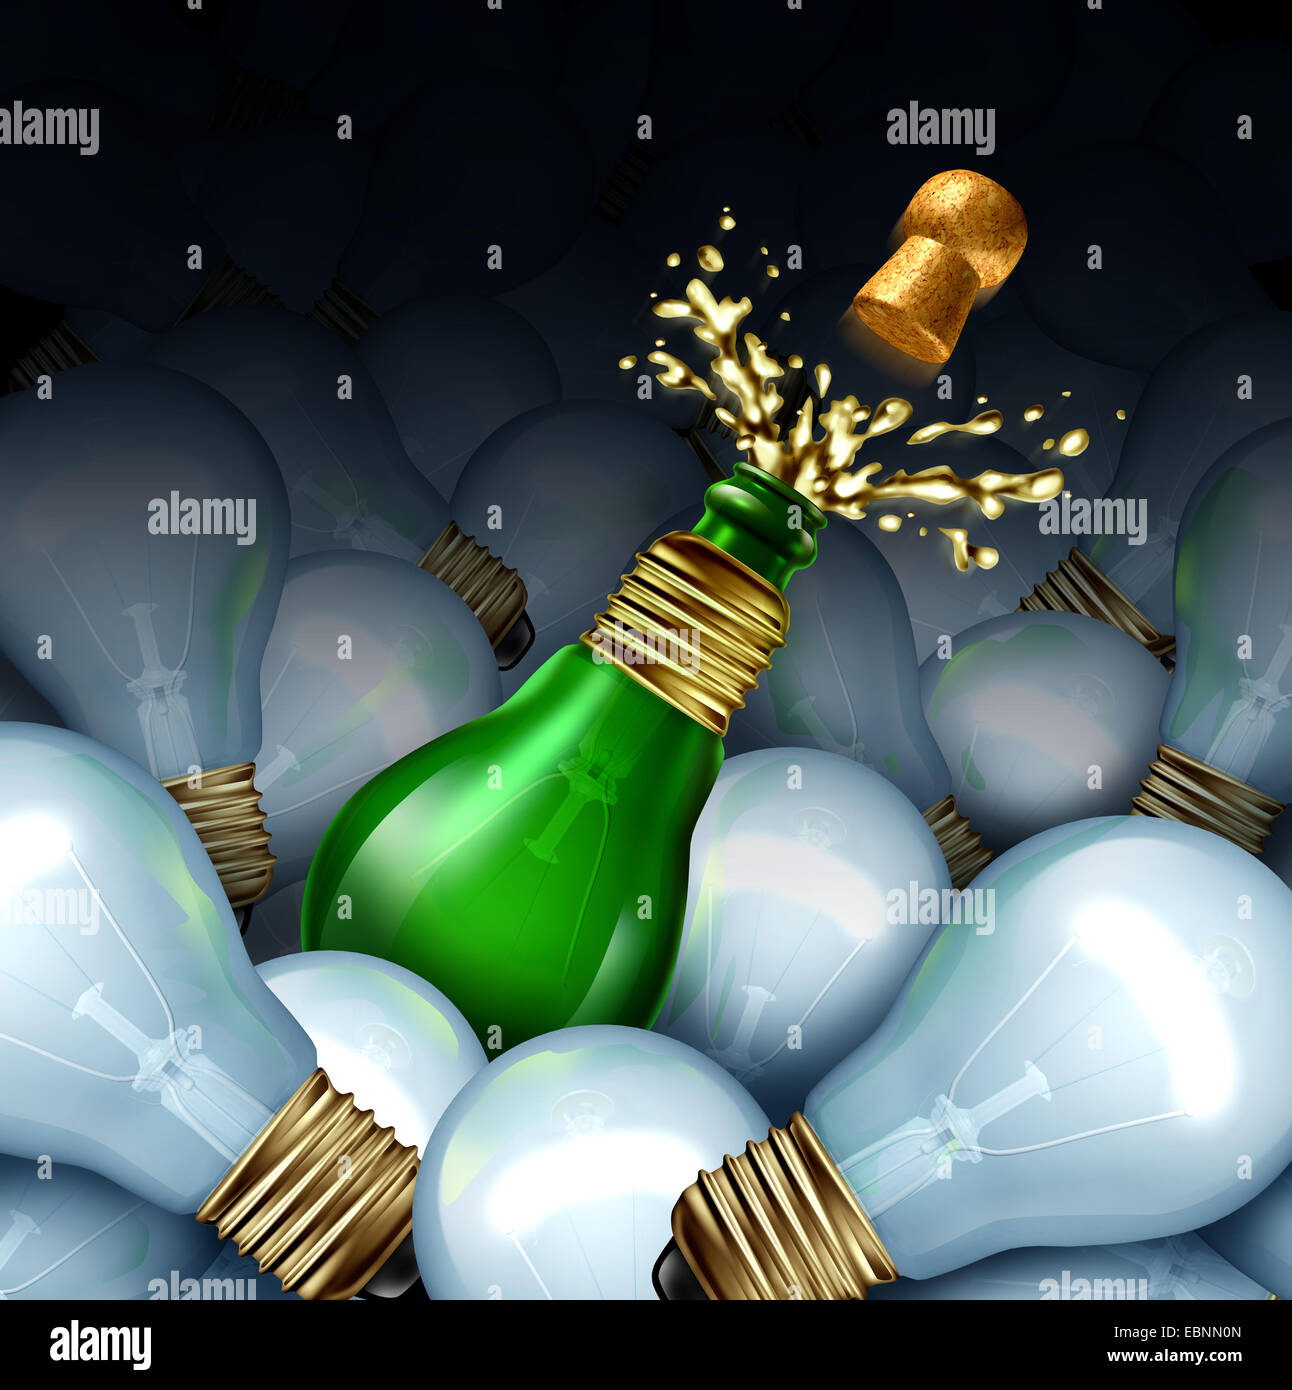 Frohes neues Jahr-Idee-Konzept als eine Gruppe von Glühbirnen und ein grünes Glas Champagner oder Sekt Flasche geformt wie eine Glühbirne mit Splash und fliegenden Korken als Symbol der ursprünglichen kreativen Partei Planung für Silvester Feier. Stockfoto